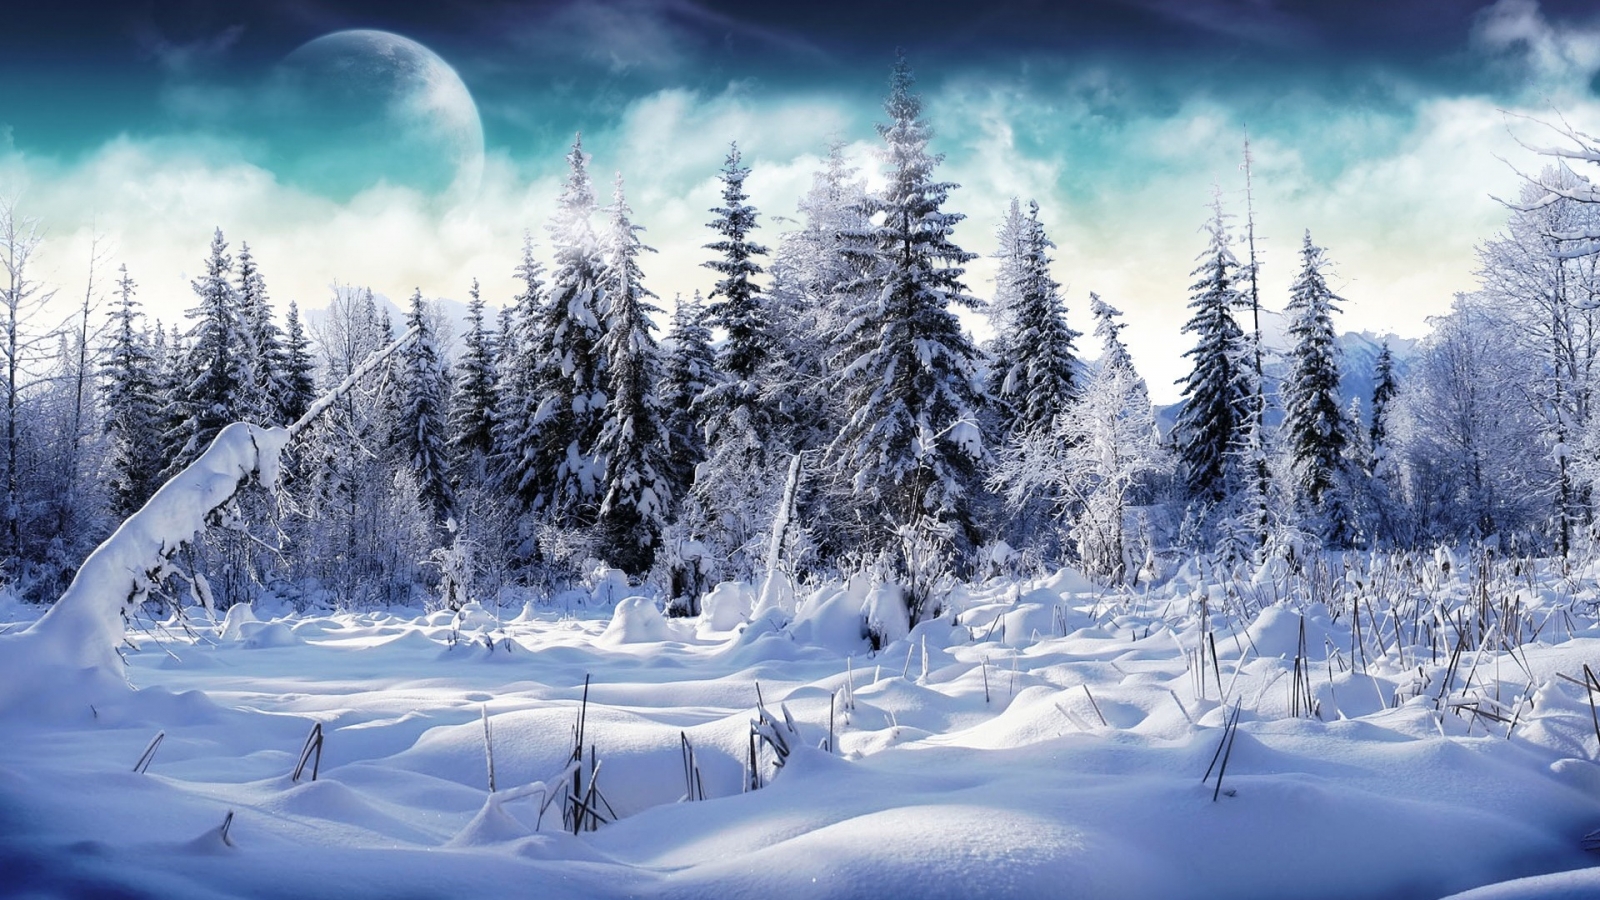 Trees full of snow for 1600 x 900 HDTV resolution